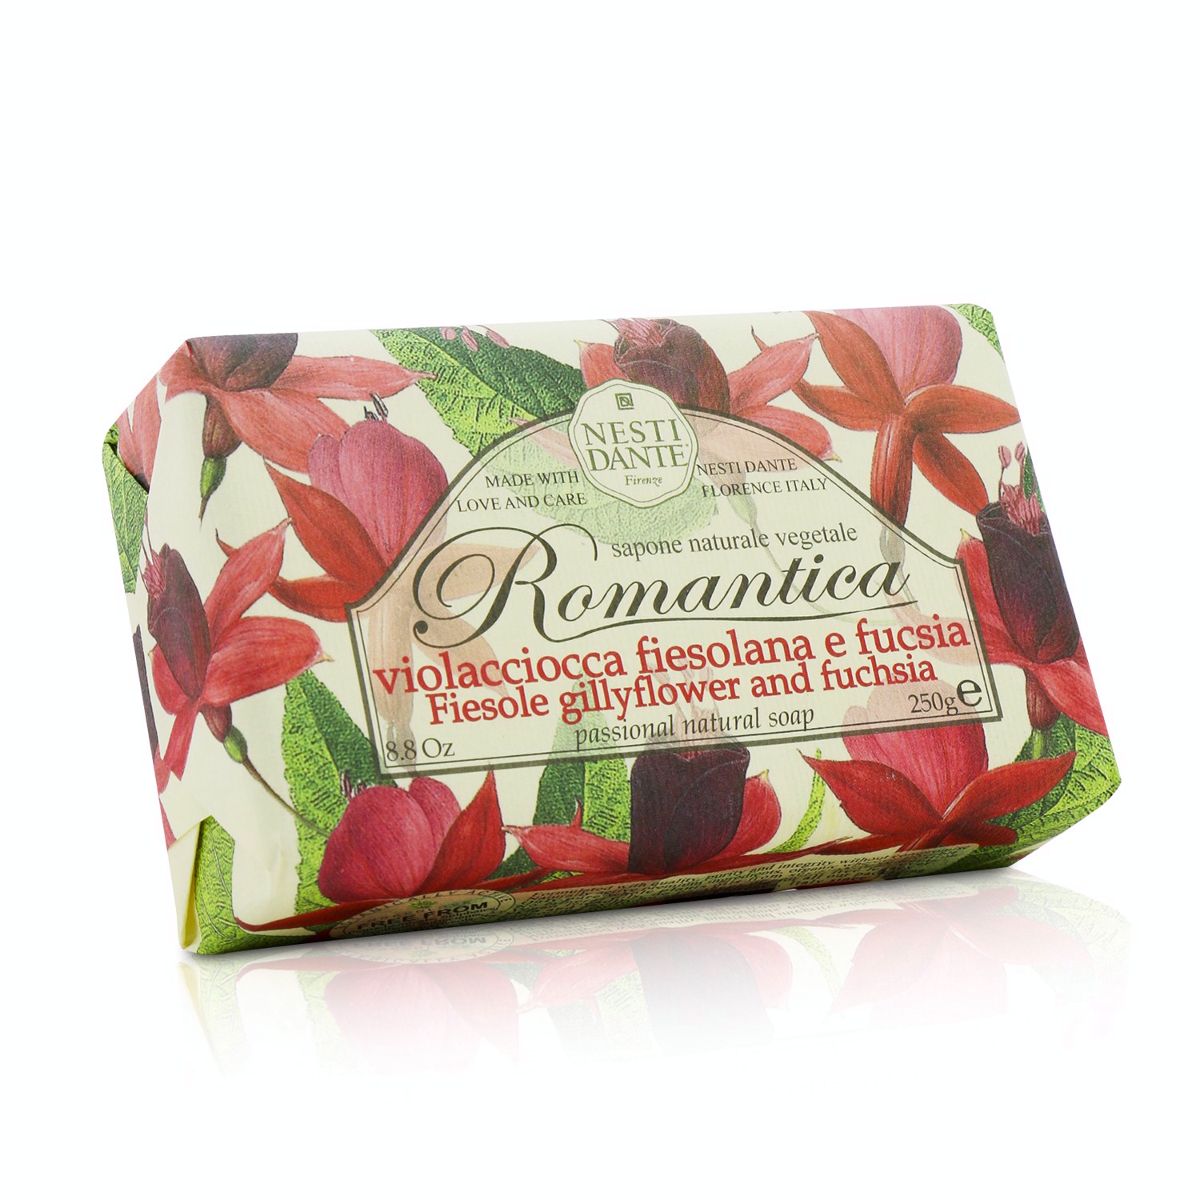 Romantica Passional Natural Soap - Fiesole Gillyflower  Fuchsia Nesti Dante Image